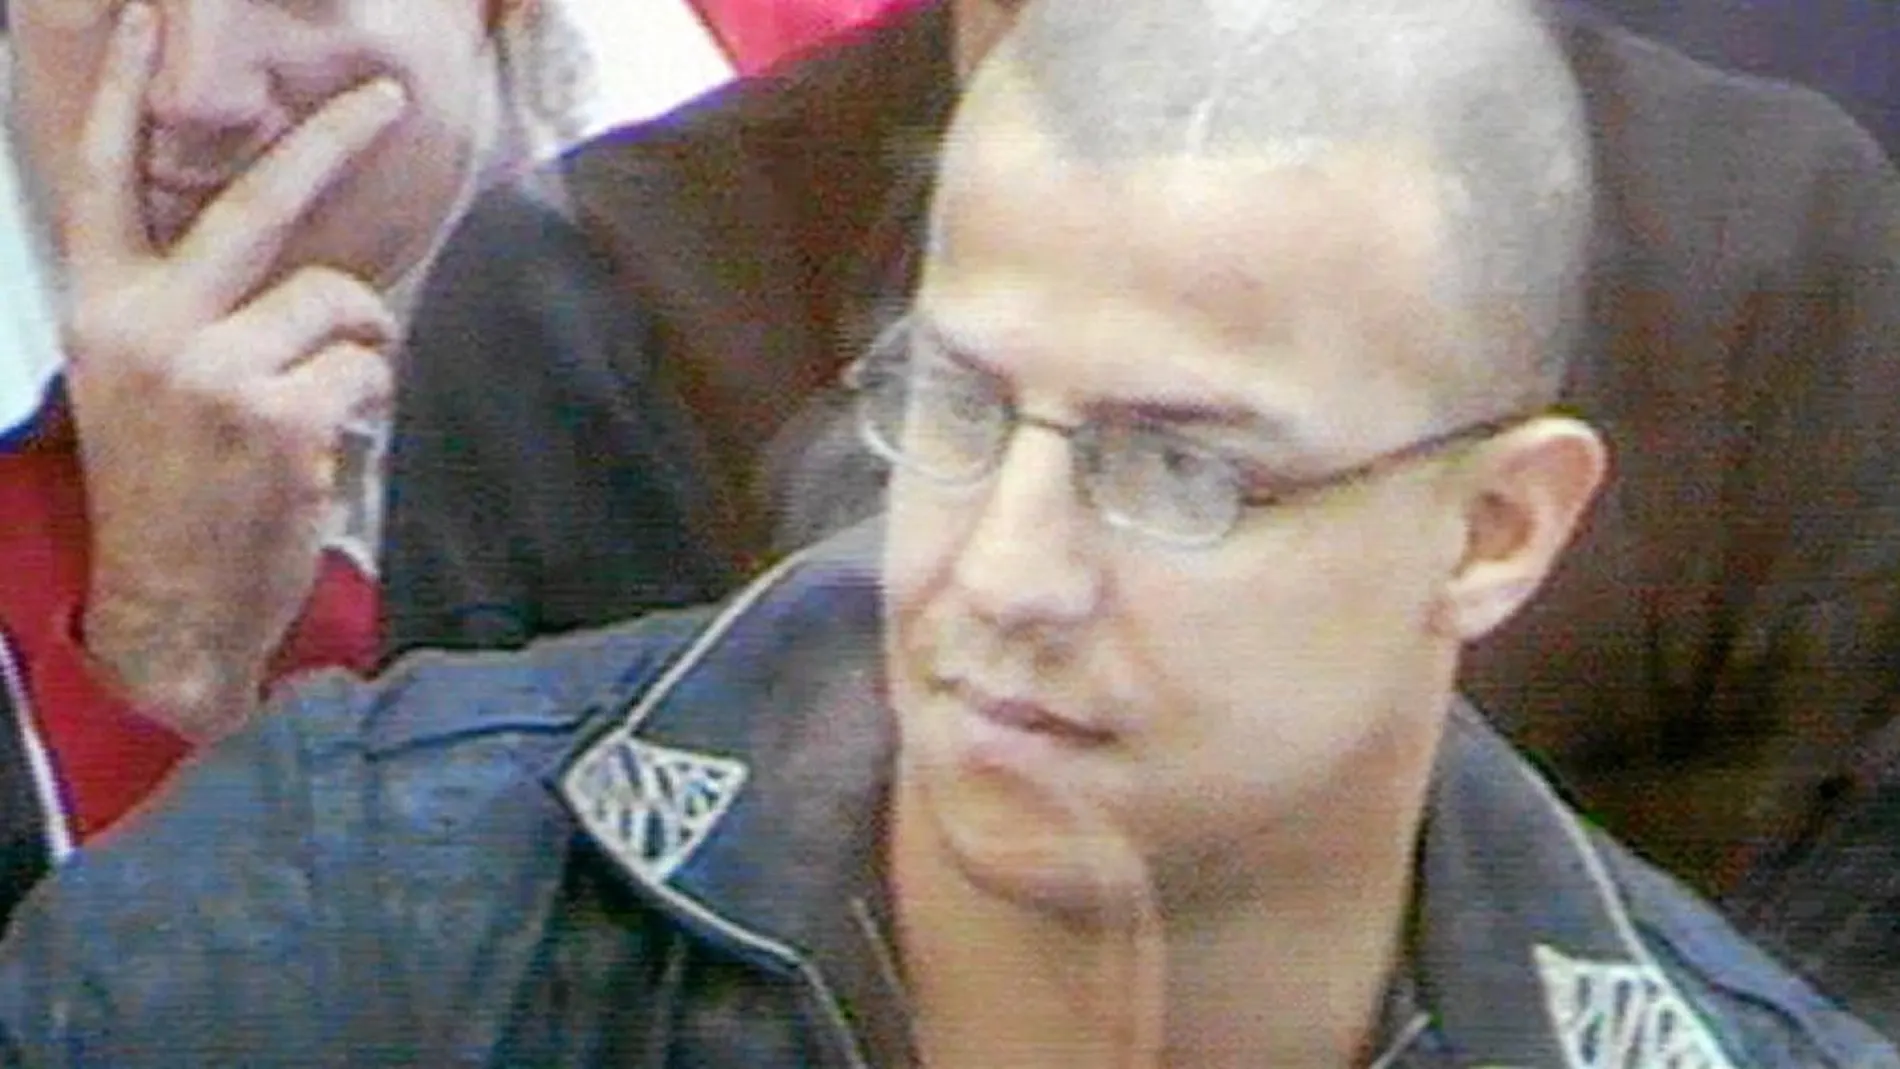 Zouhier, en el juicio, durante el cual fue llamado al orden varias veces